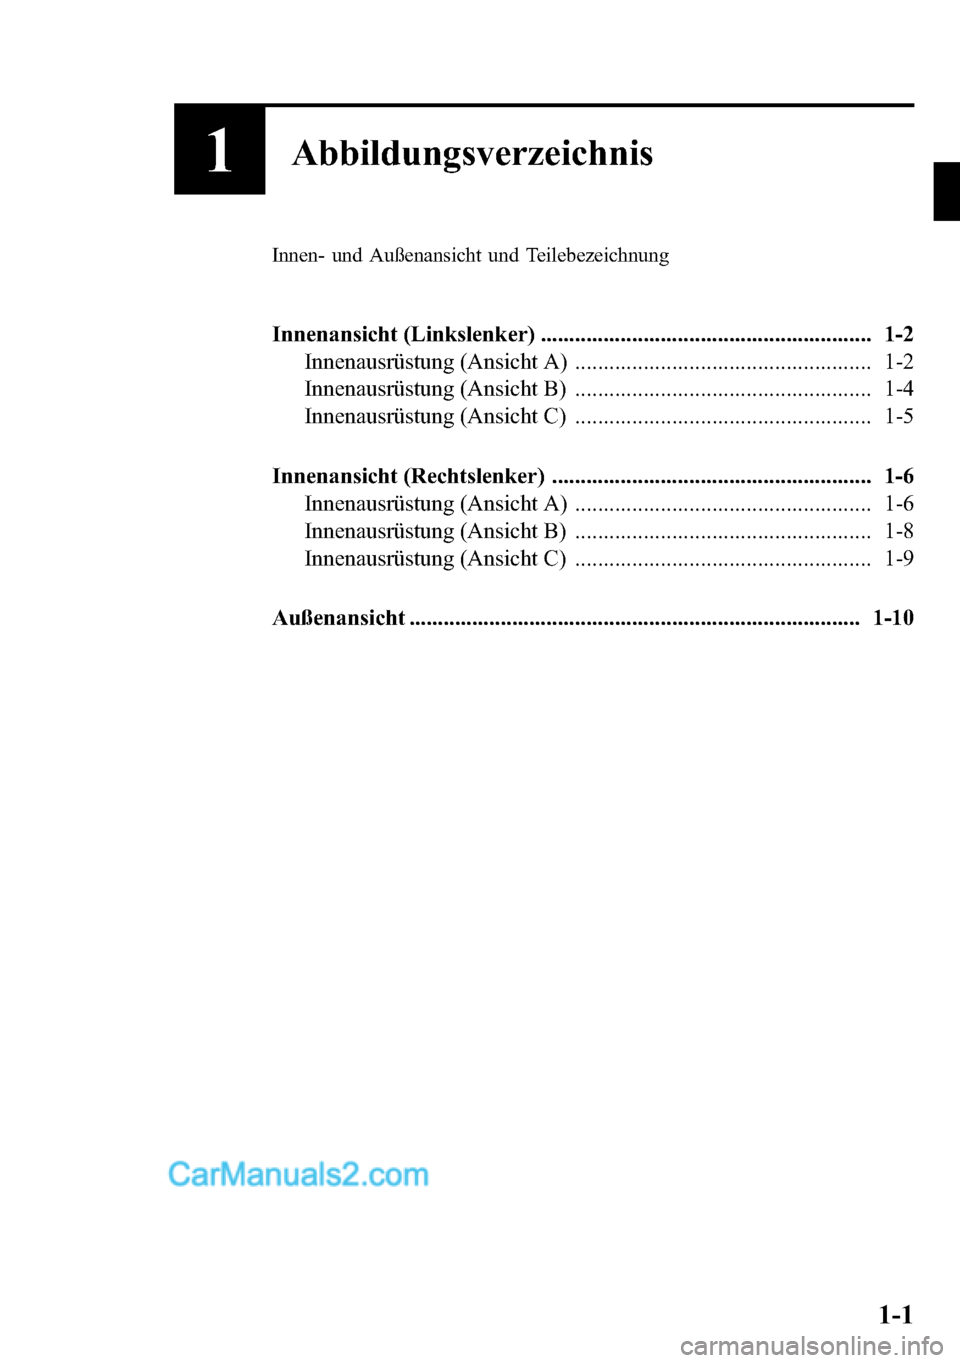 MAZDA MODEL CX-5 2016  Betriebsanleitung (in German) 1Abbildungsverzeichnis
Innen- und Außenansicht und Teilebezeichnung
Innenansicht (Linkslenker) .......................................................... 1-2
Innenausrüstung (Ansicht A) ............